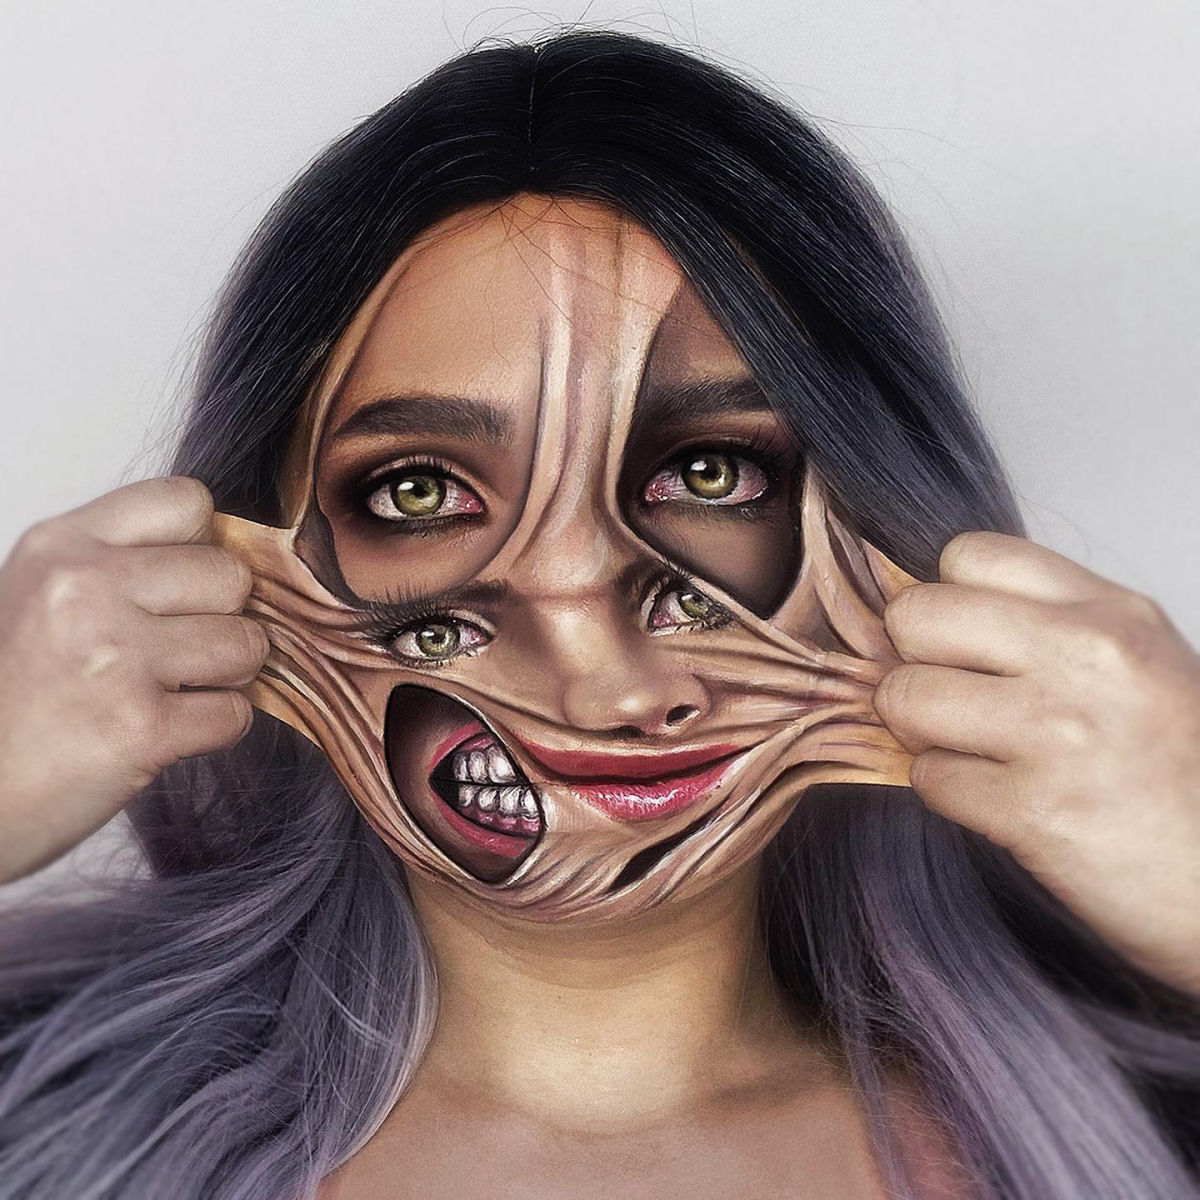 Artista usa seu próprio rosto como tela para ilusões surrealistas 03